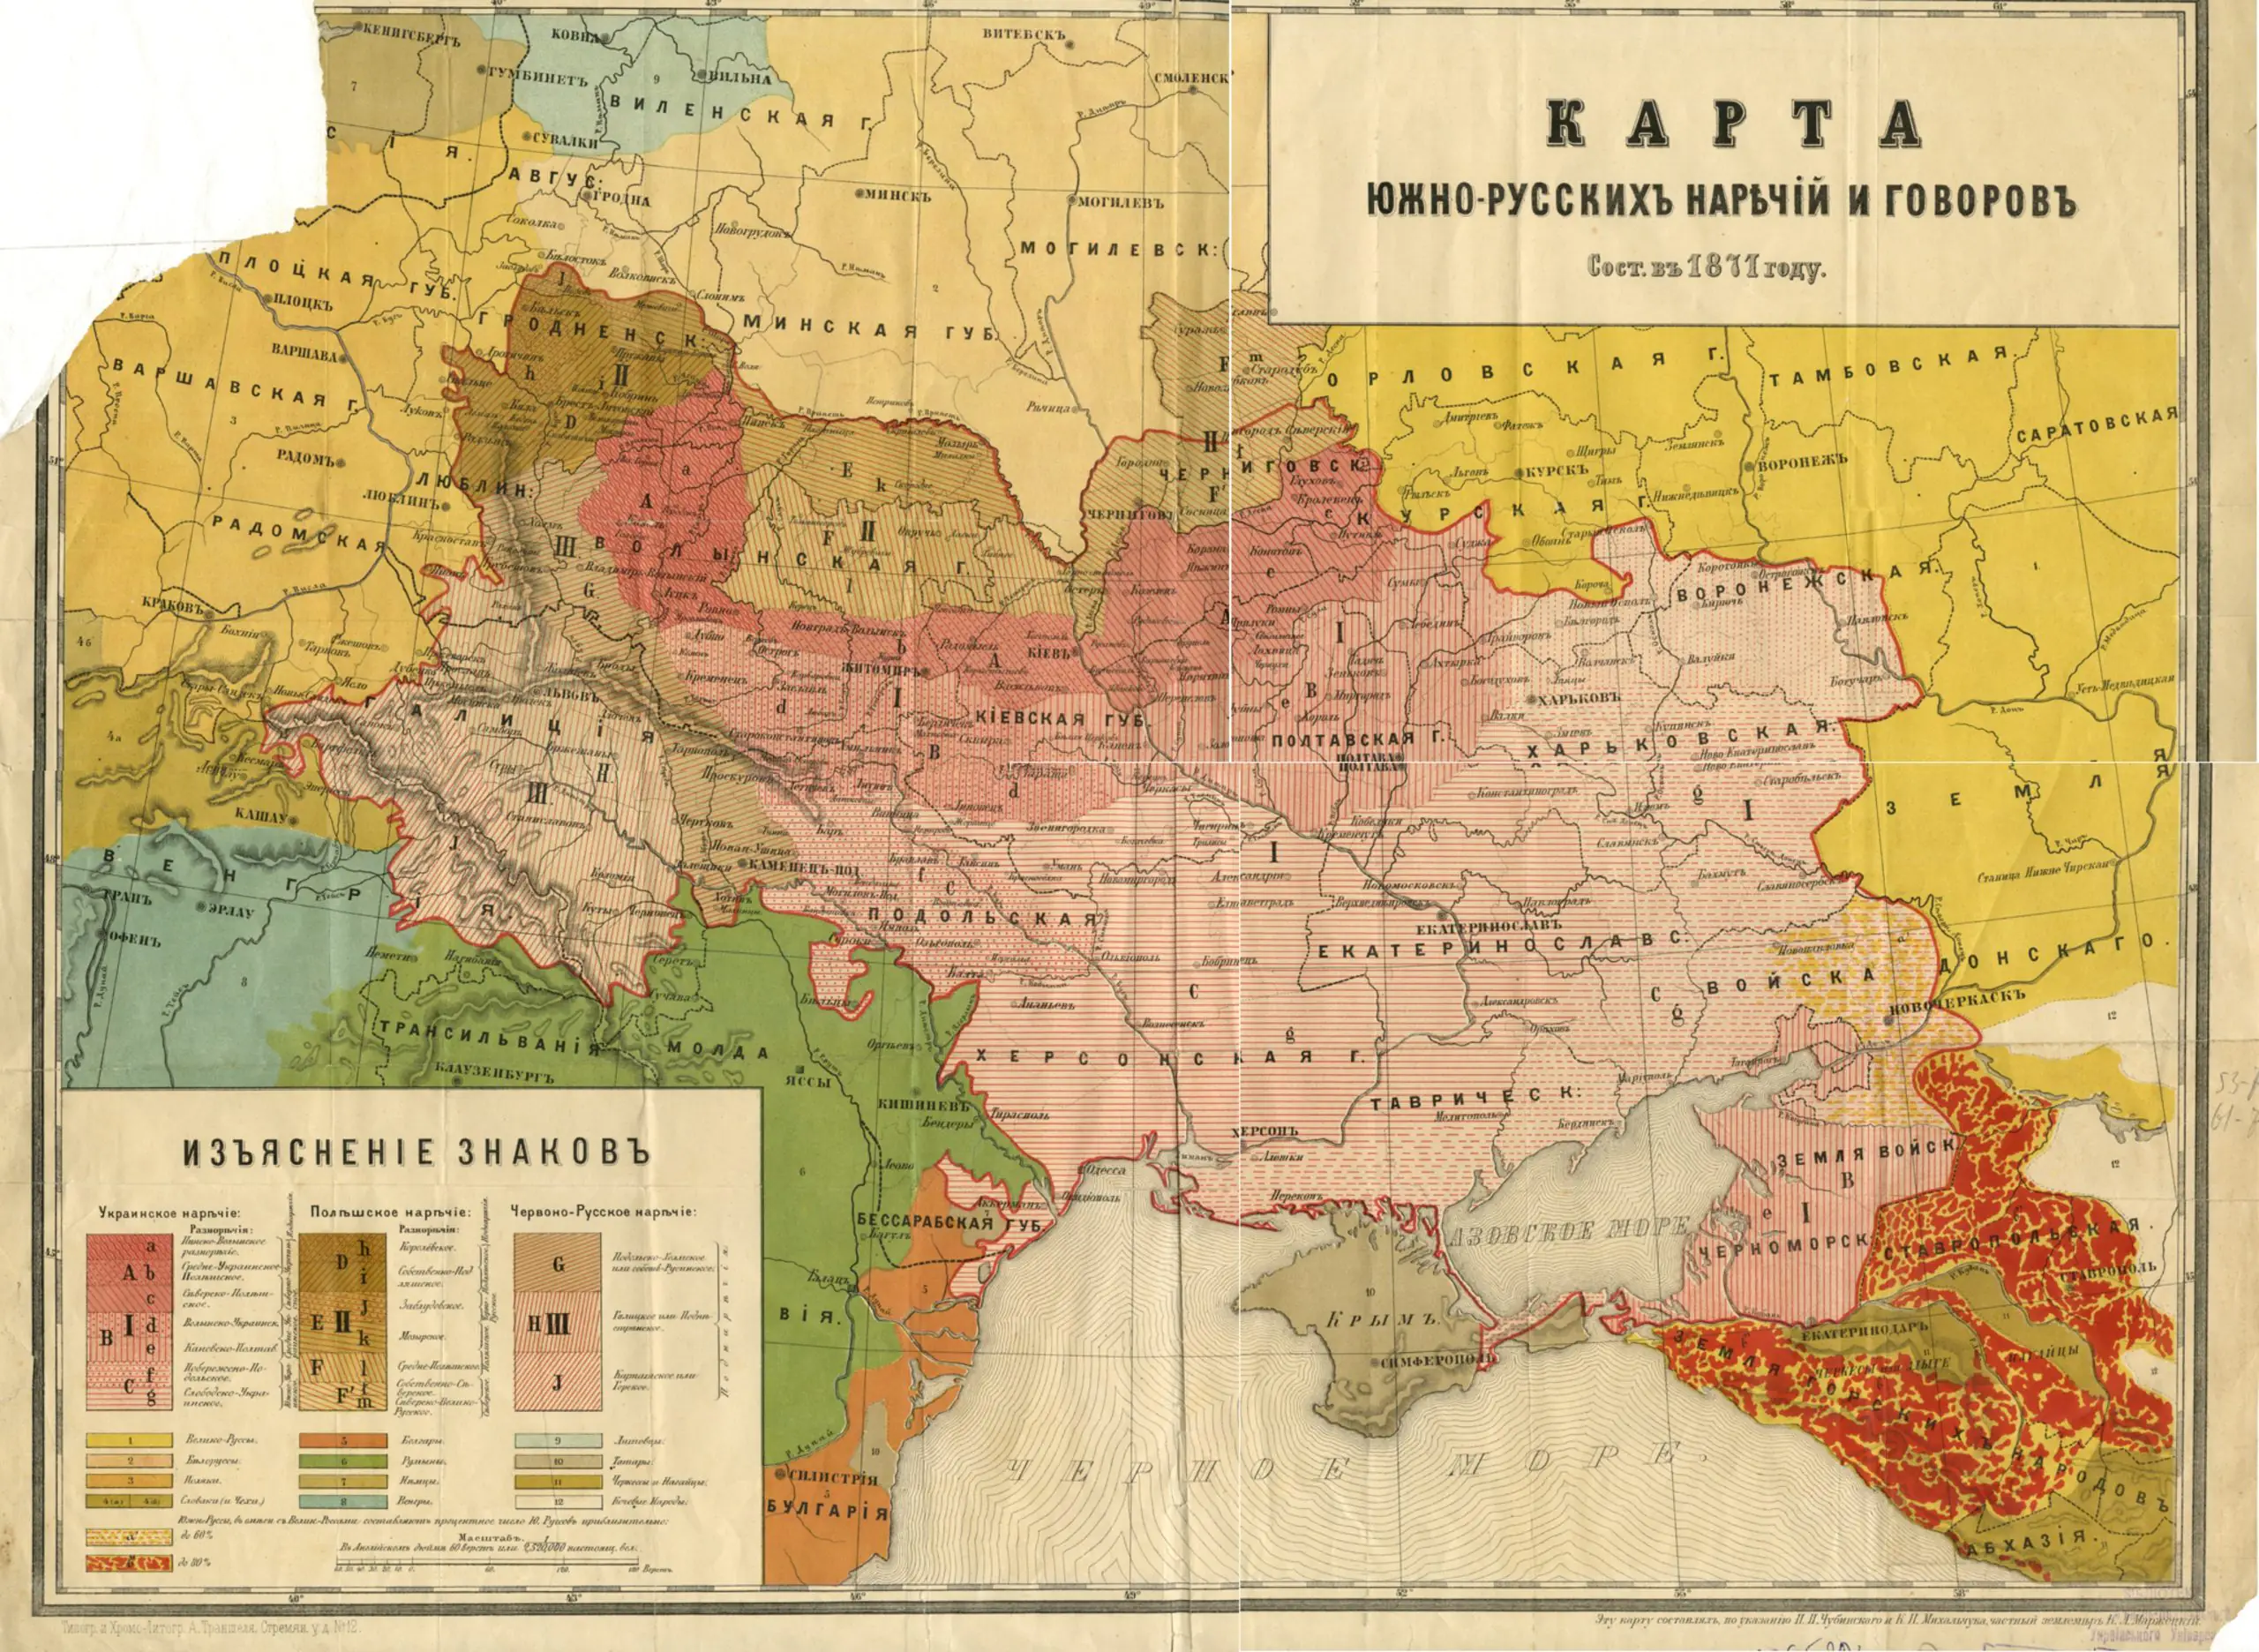 Згідно з картою, тогочасна Сумщина мала говори близькі до Чернігівщини, Київщини та Полтавщини. Джерело: Вікіпедія